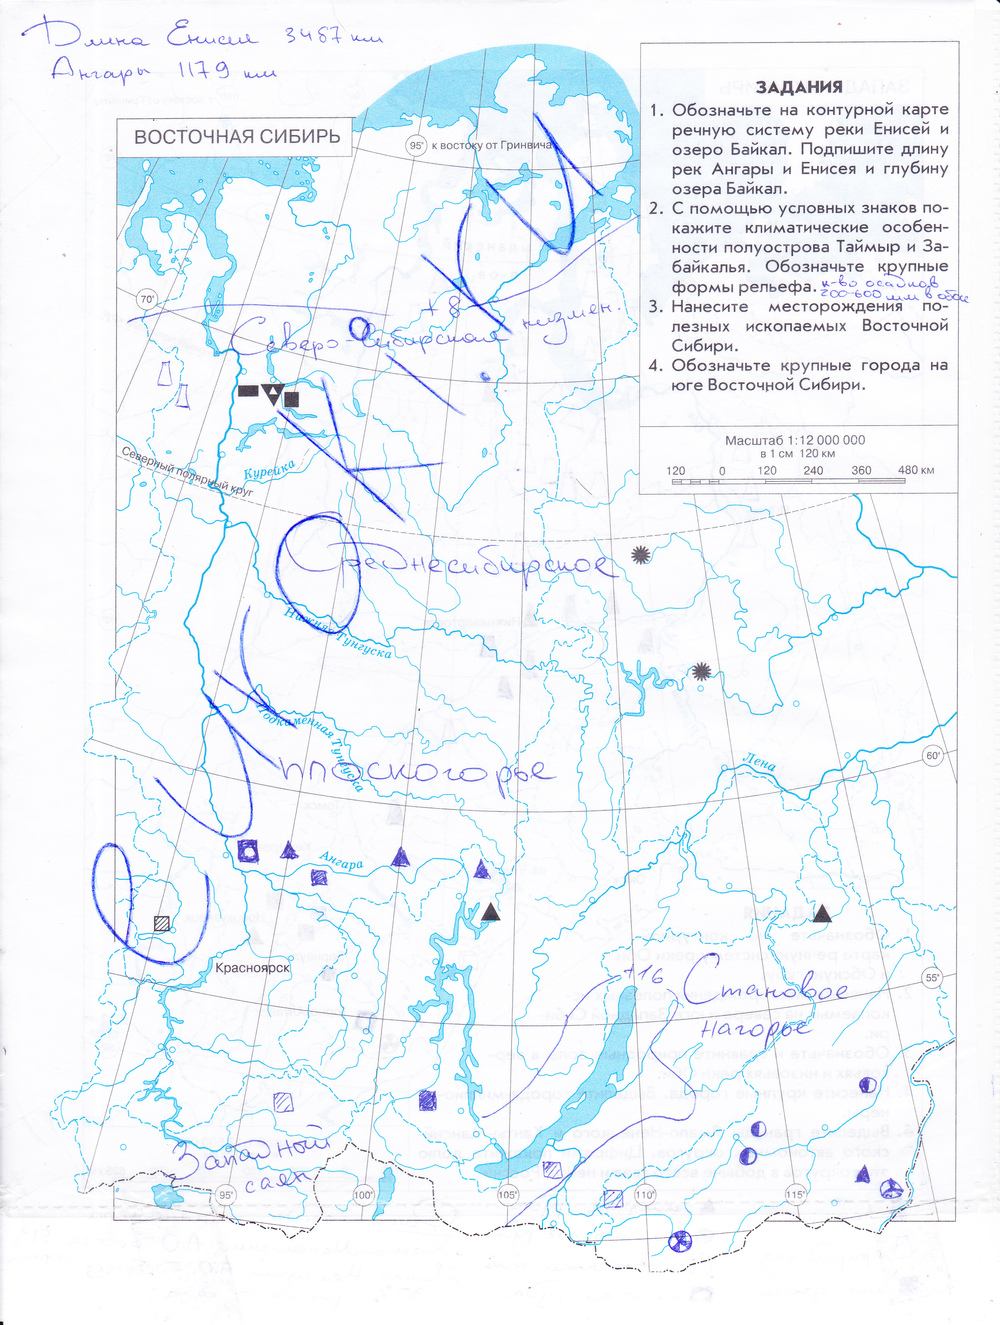 Реки Западной Сибири на контурной карте